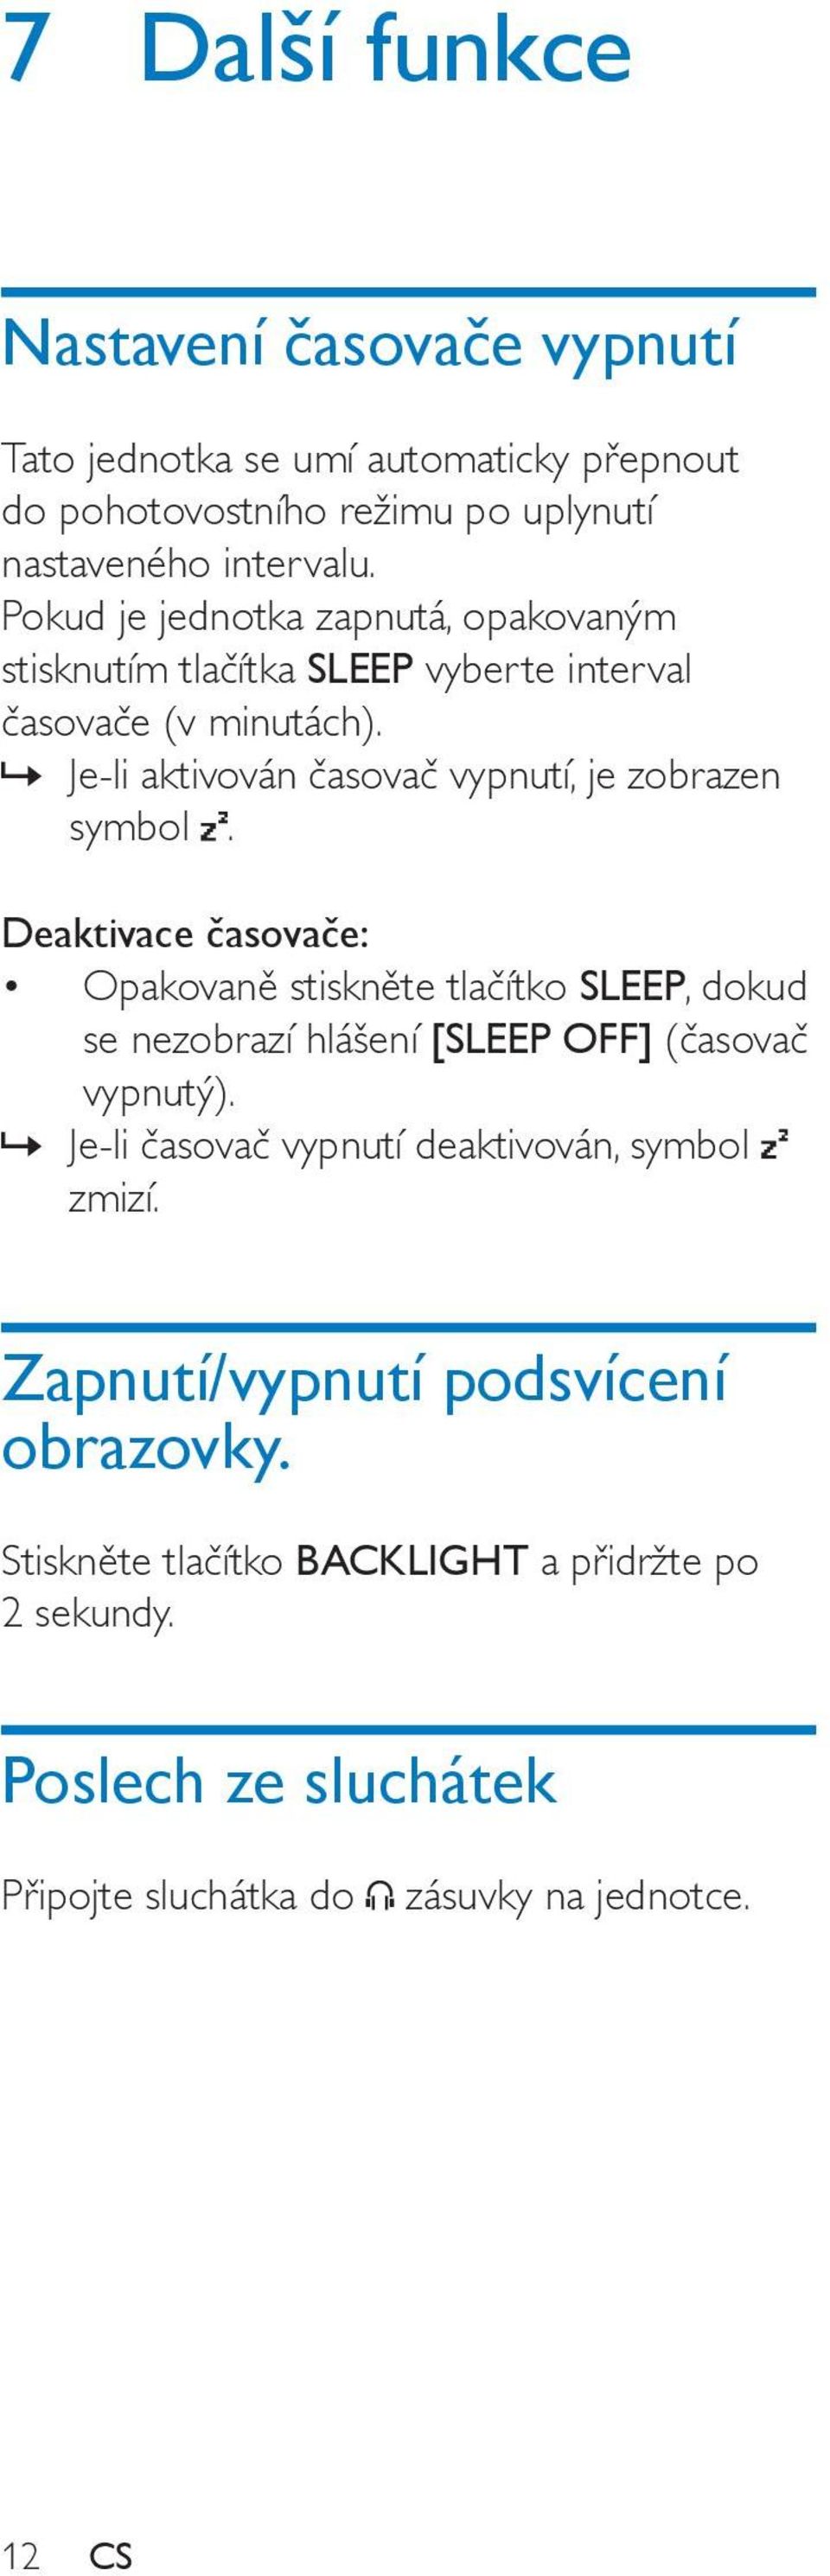 Deaktivace časovače: Opakovaně stiskněte tlačítko SLEEP, dokud se nezobrazí hlášení [SLEEP OFF] (časovač vypnutý).